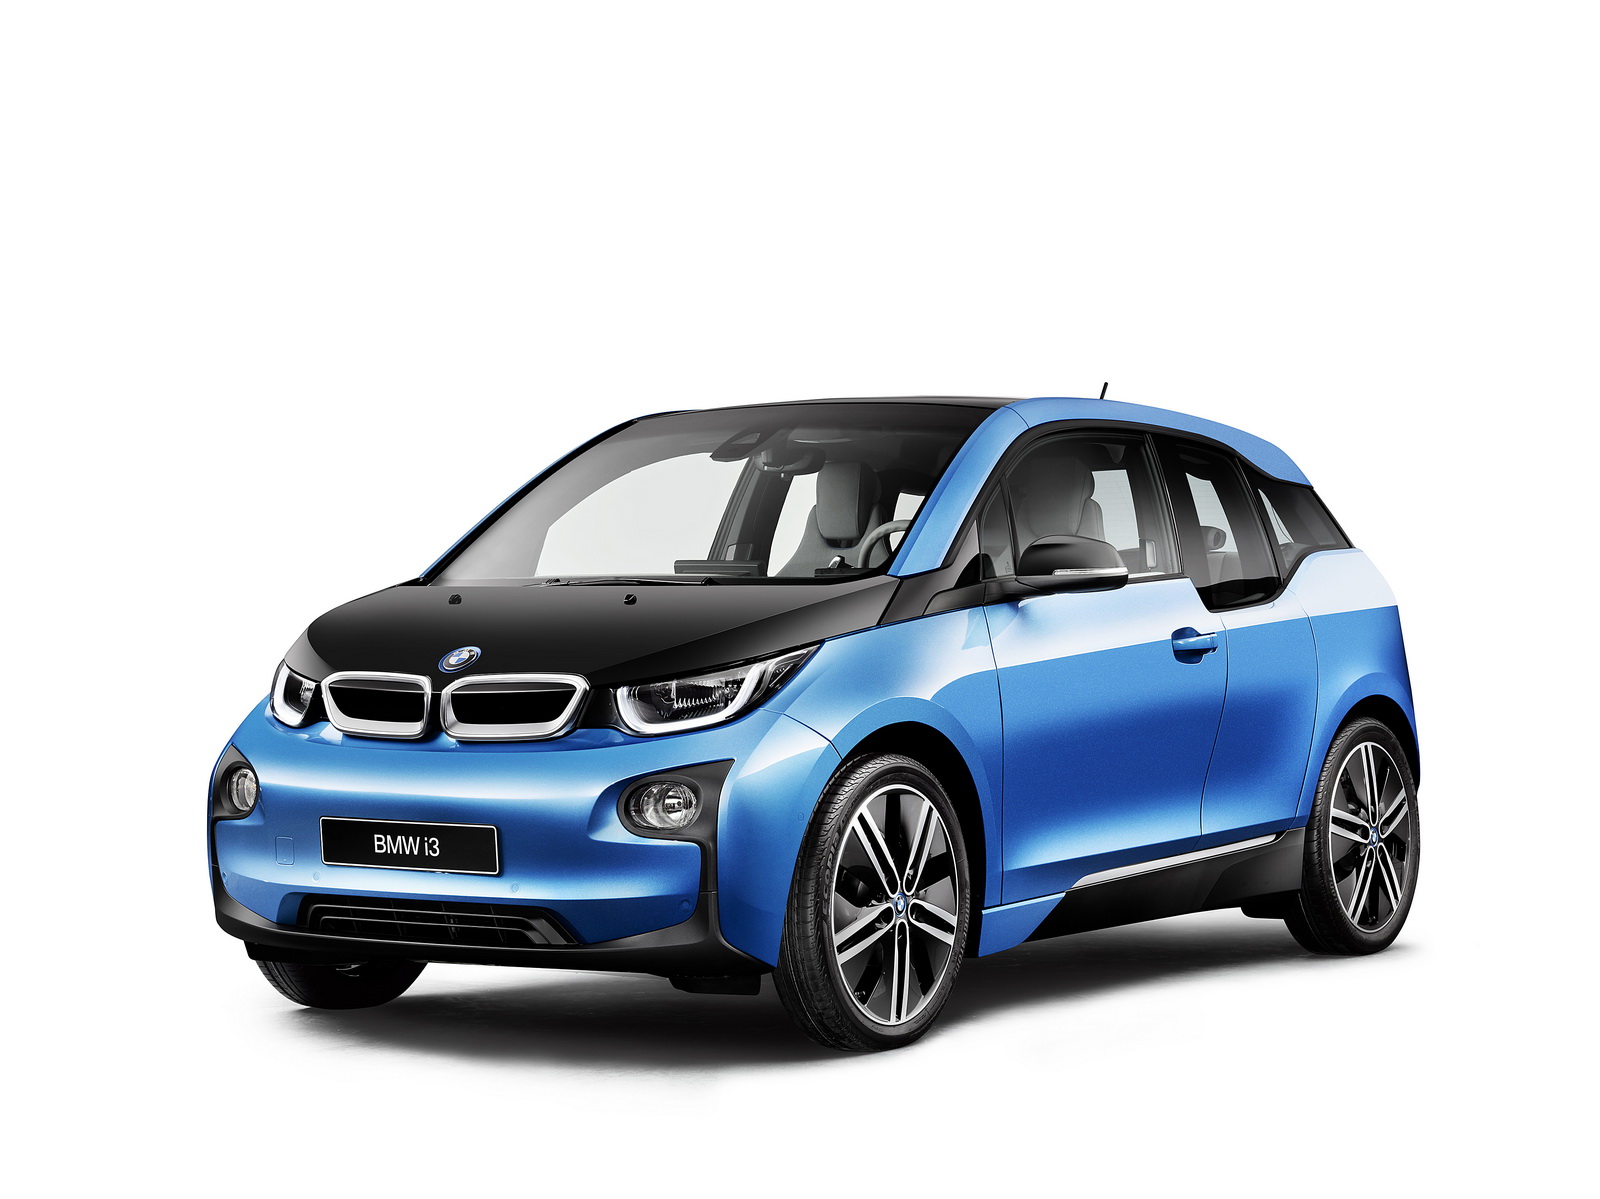 
Theo hãng BMW, i3 2017 phiên bản chạy hoàn toàn bằng điện vẫn sở hữu công suất tối đa 170 mã lực và mô-men xoắn cực đại 249 Nm. Con số tương ứng của động cơ xăng 2 xy-lanh, dung tích 650 phân khối trên BMW i3 2017 là 38 mã lực.
